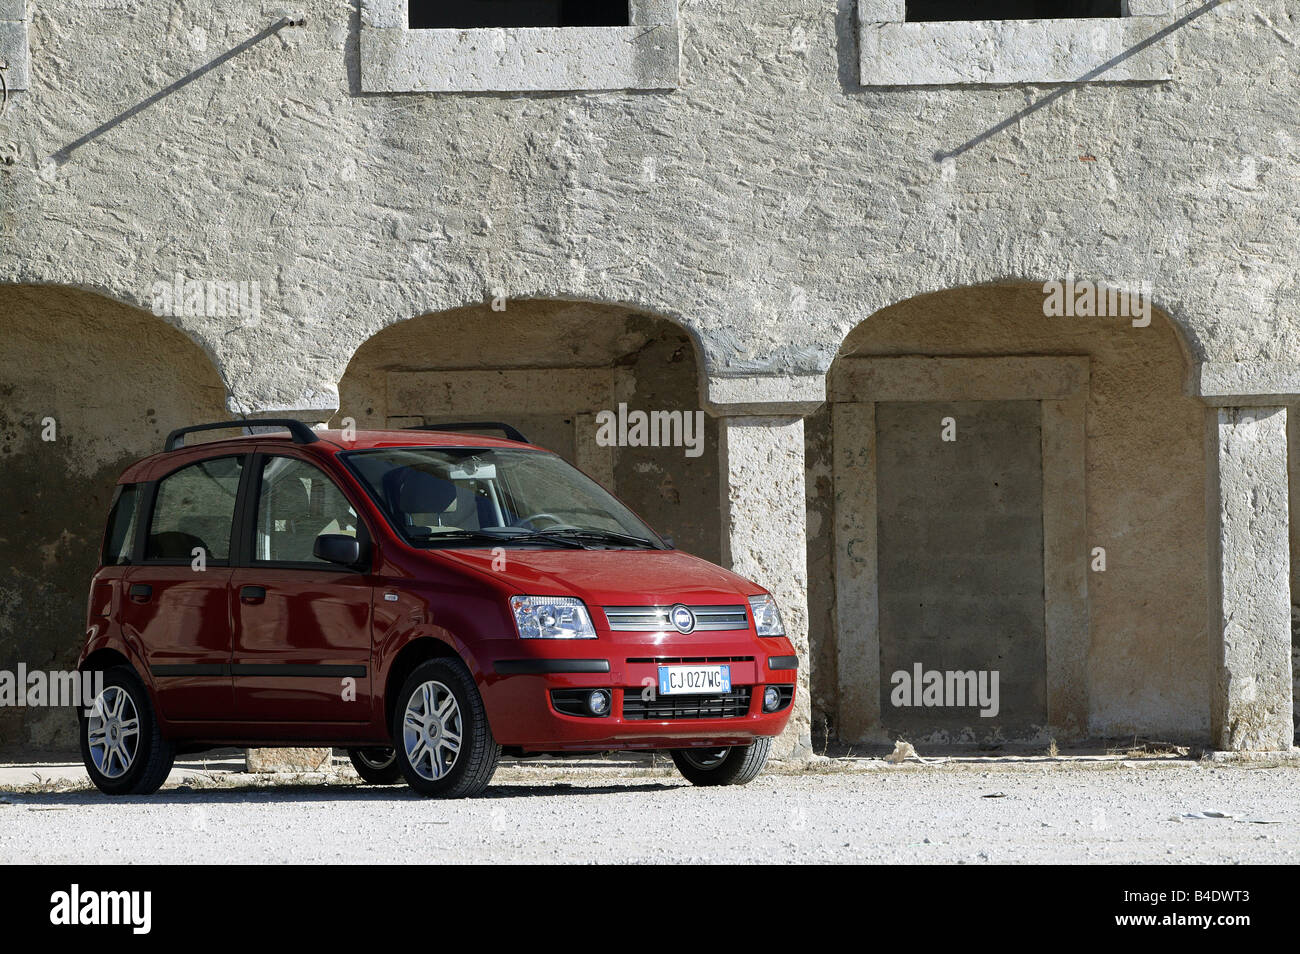 Auto, Fiat Panda, Miniapprox.s, Limousine, Modell Jahr 2003-, rot, stehend,  Aufrechterhaltung, Diagonal von der Front, Vorderansicht, sid  Stockfotografie - Alamy